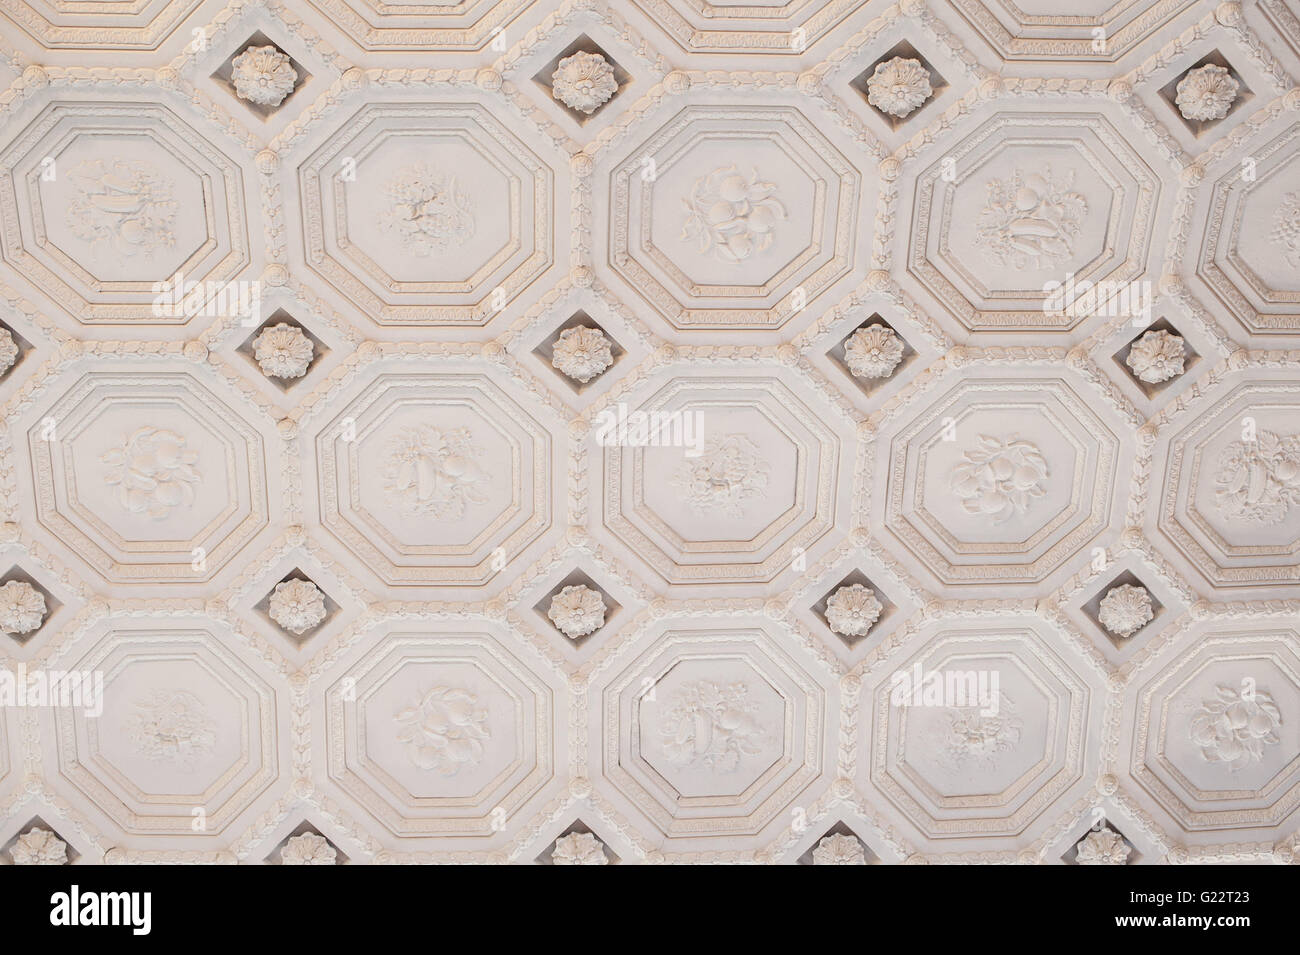 La texture de l'architecture d'époque dans un style classique de plafond Banque D'Images